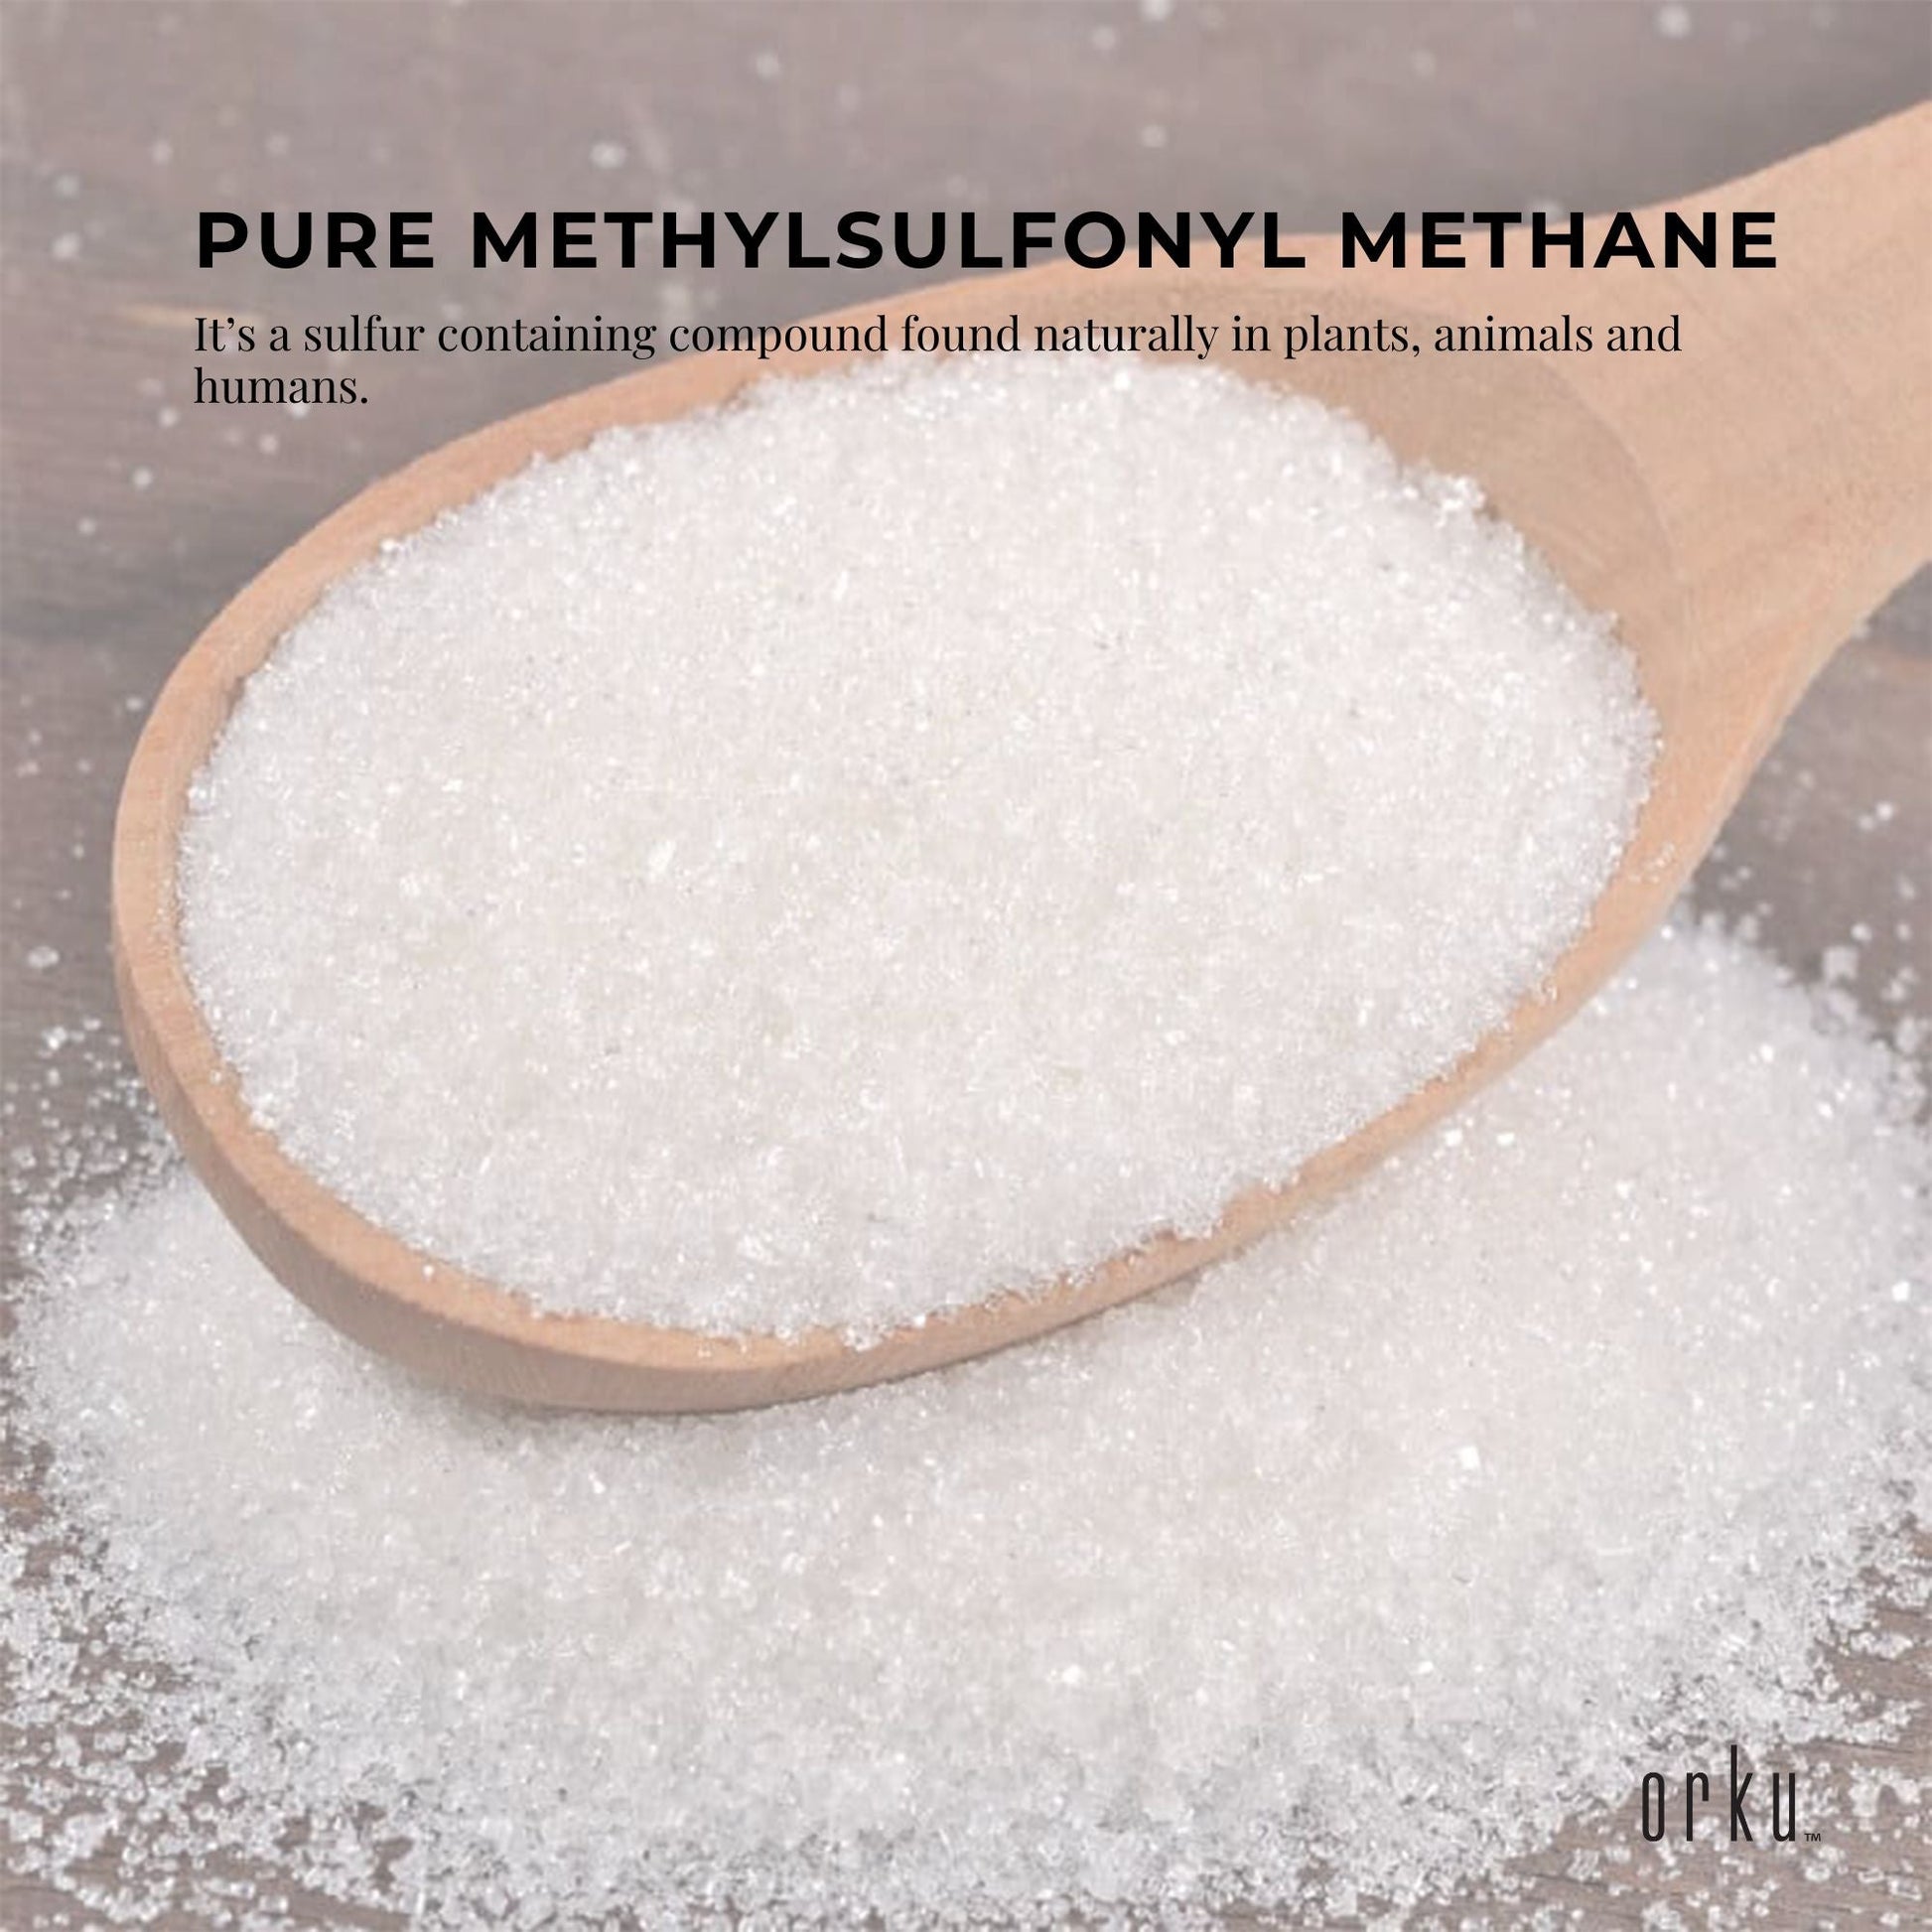 MSM Powder or Crystals - 99% Pure Methylsulfonylmethane Dimethyl Sulfone Bulk